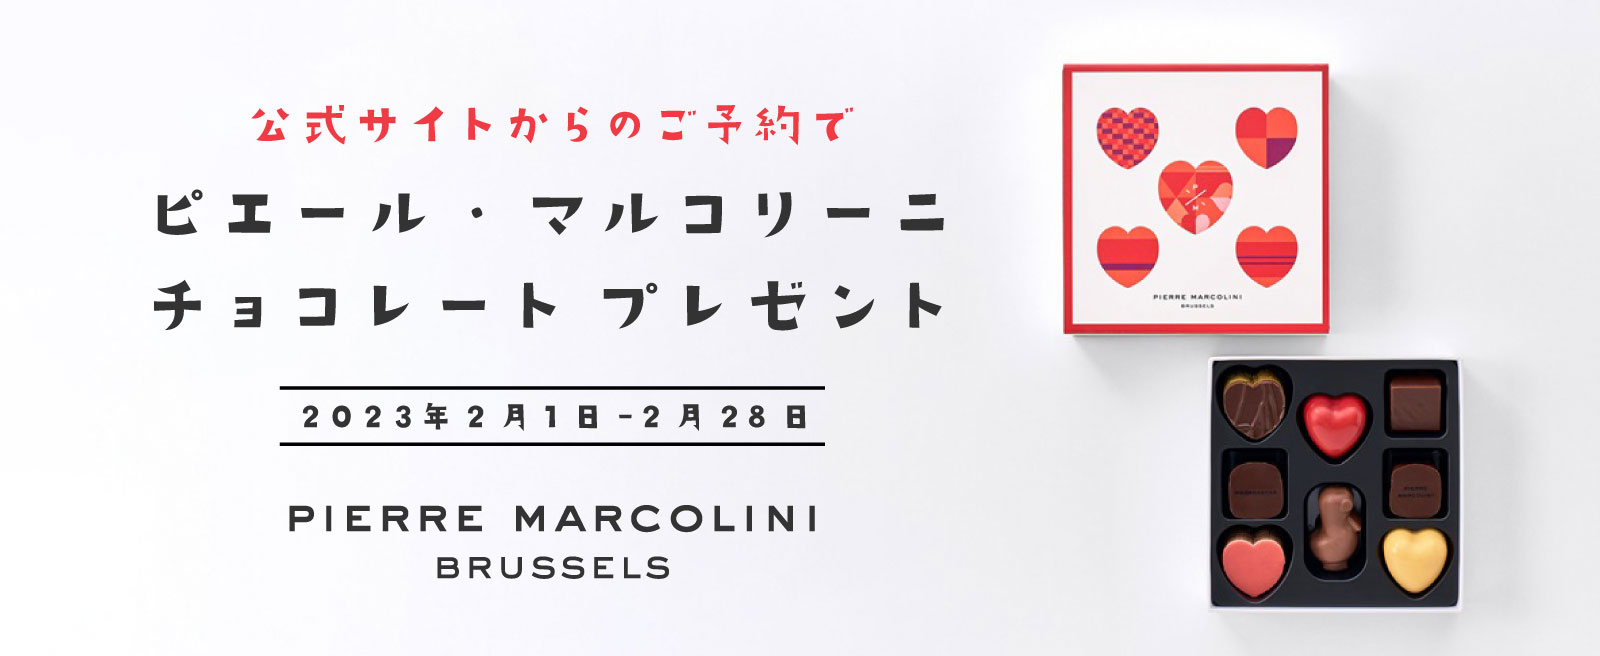 公式サイトからのご予約でピエール・マルコリーニのチョコレートプレゼント